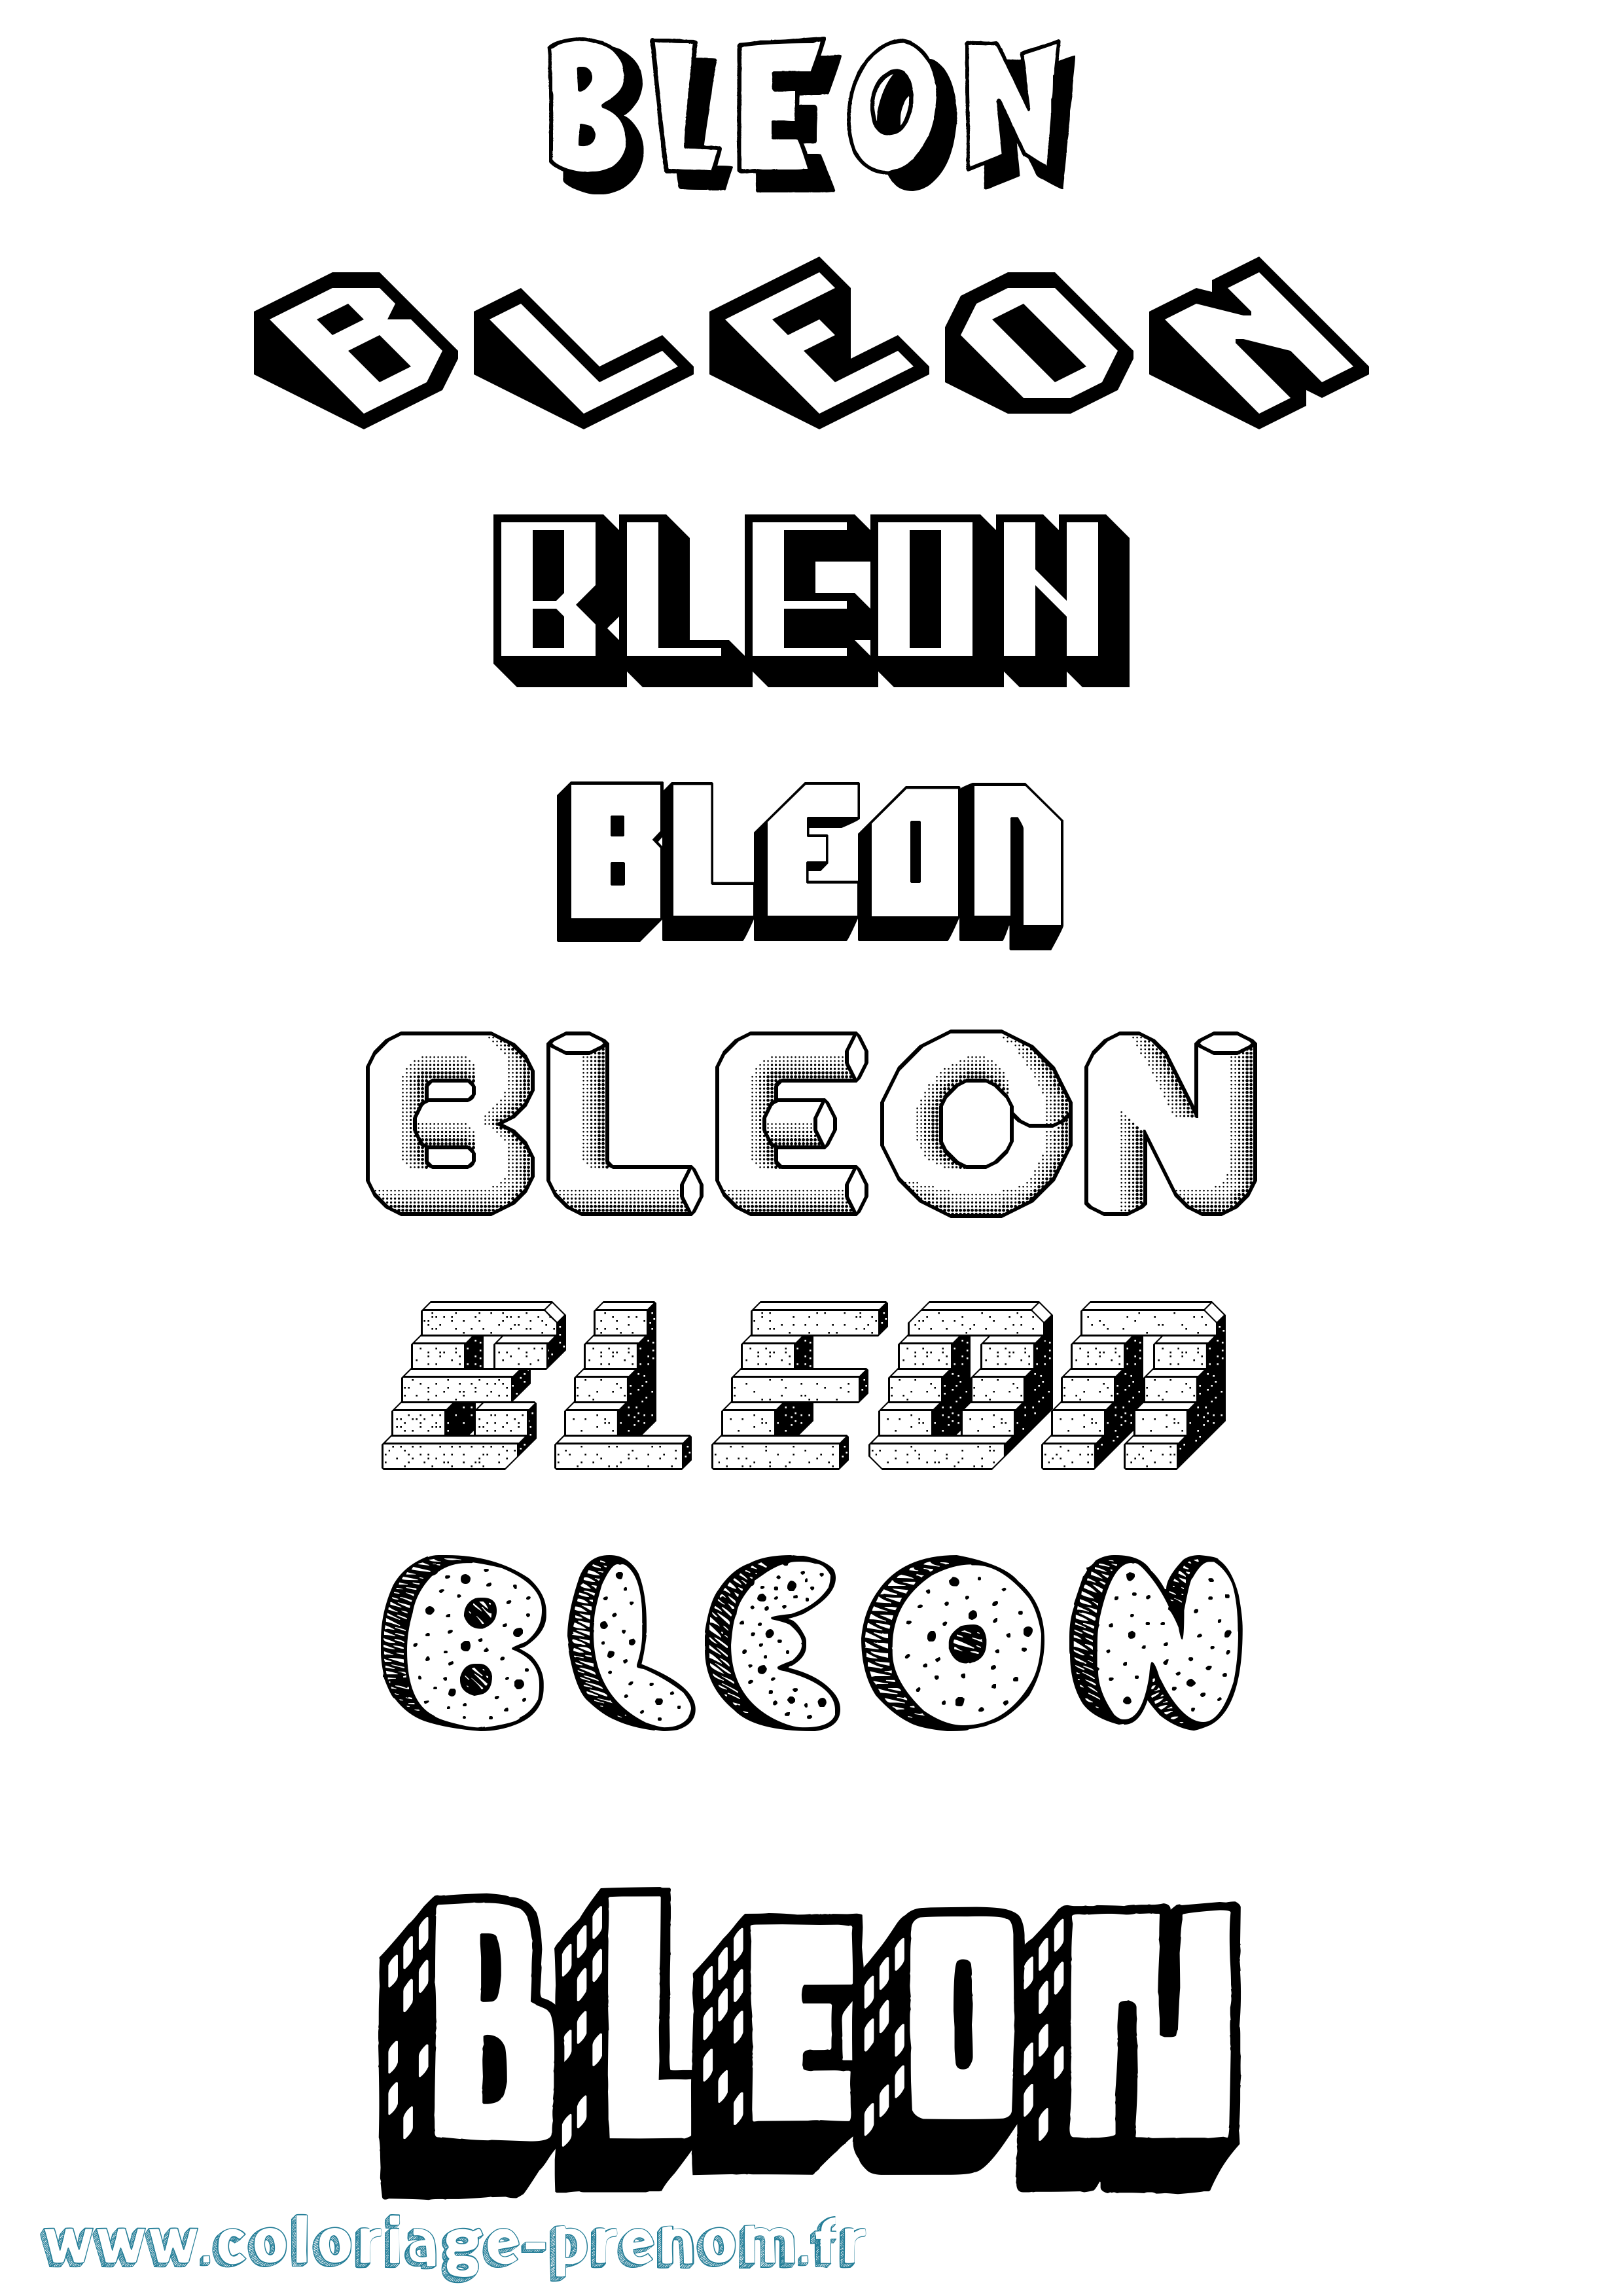 Coloriage prénom Bleon Effet 3D